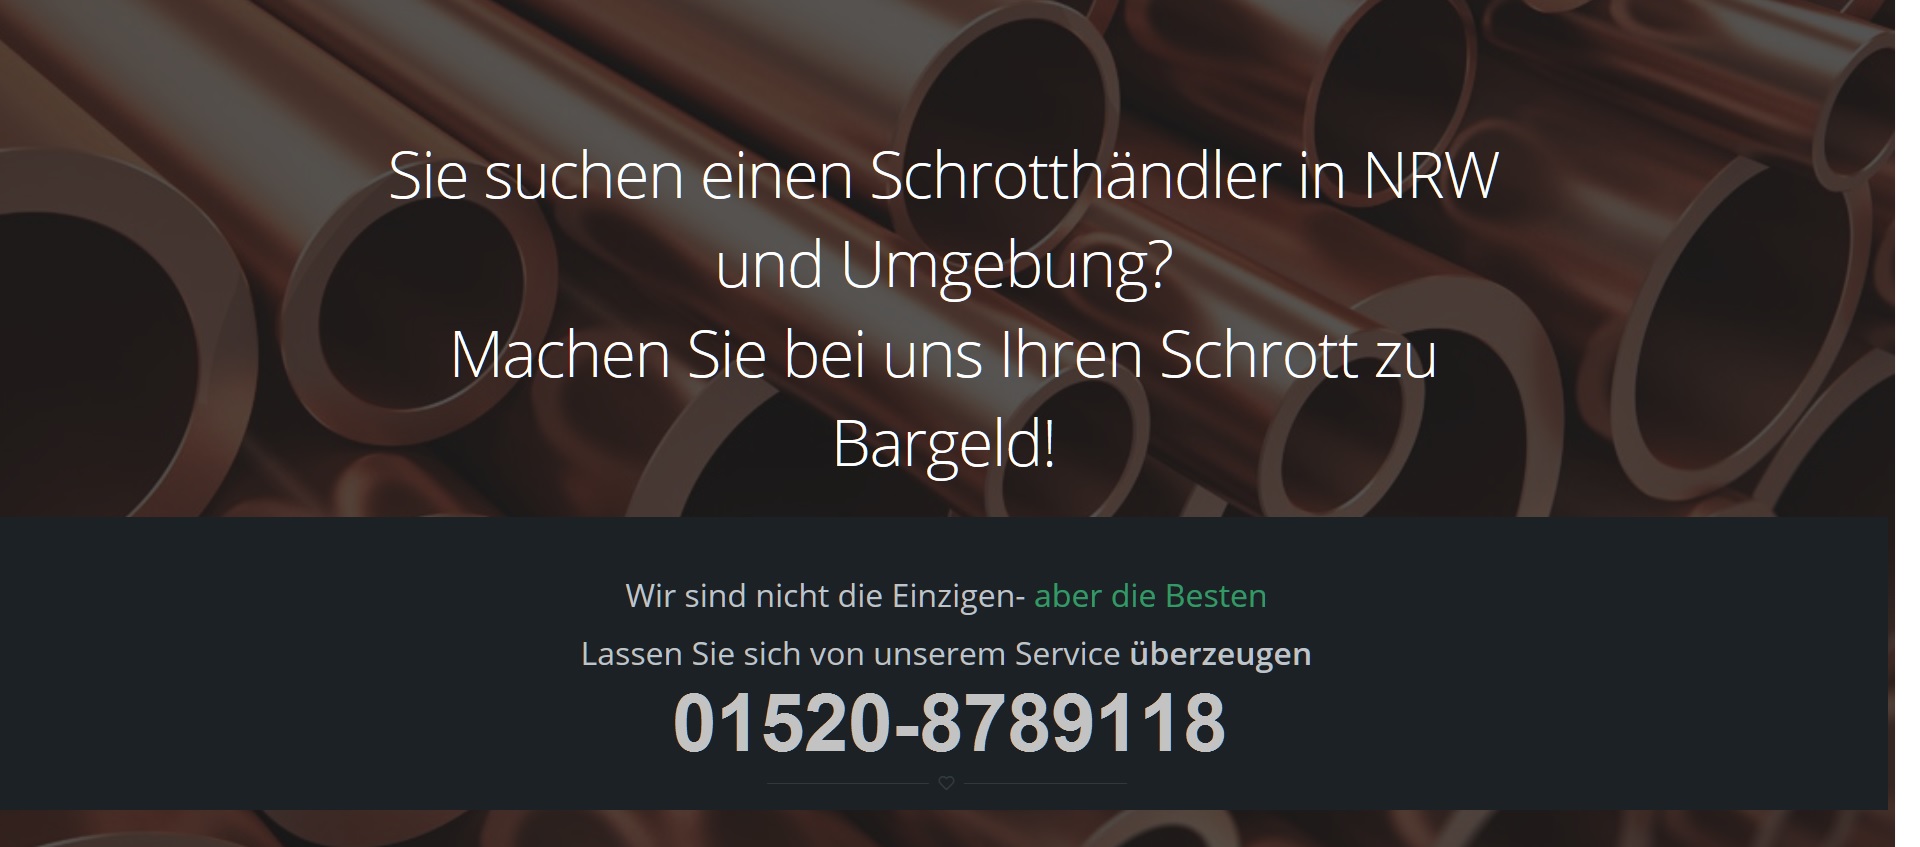 Schrottabholung wüppertal - Schrotthändler NRW